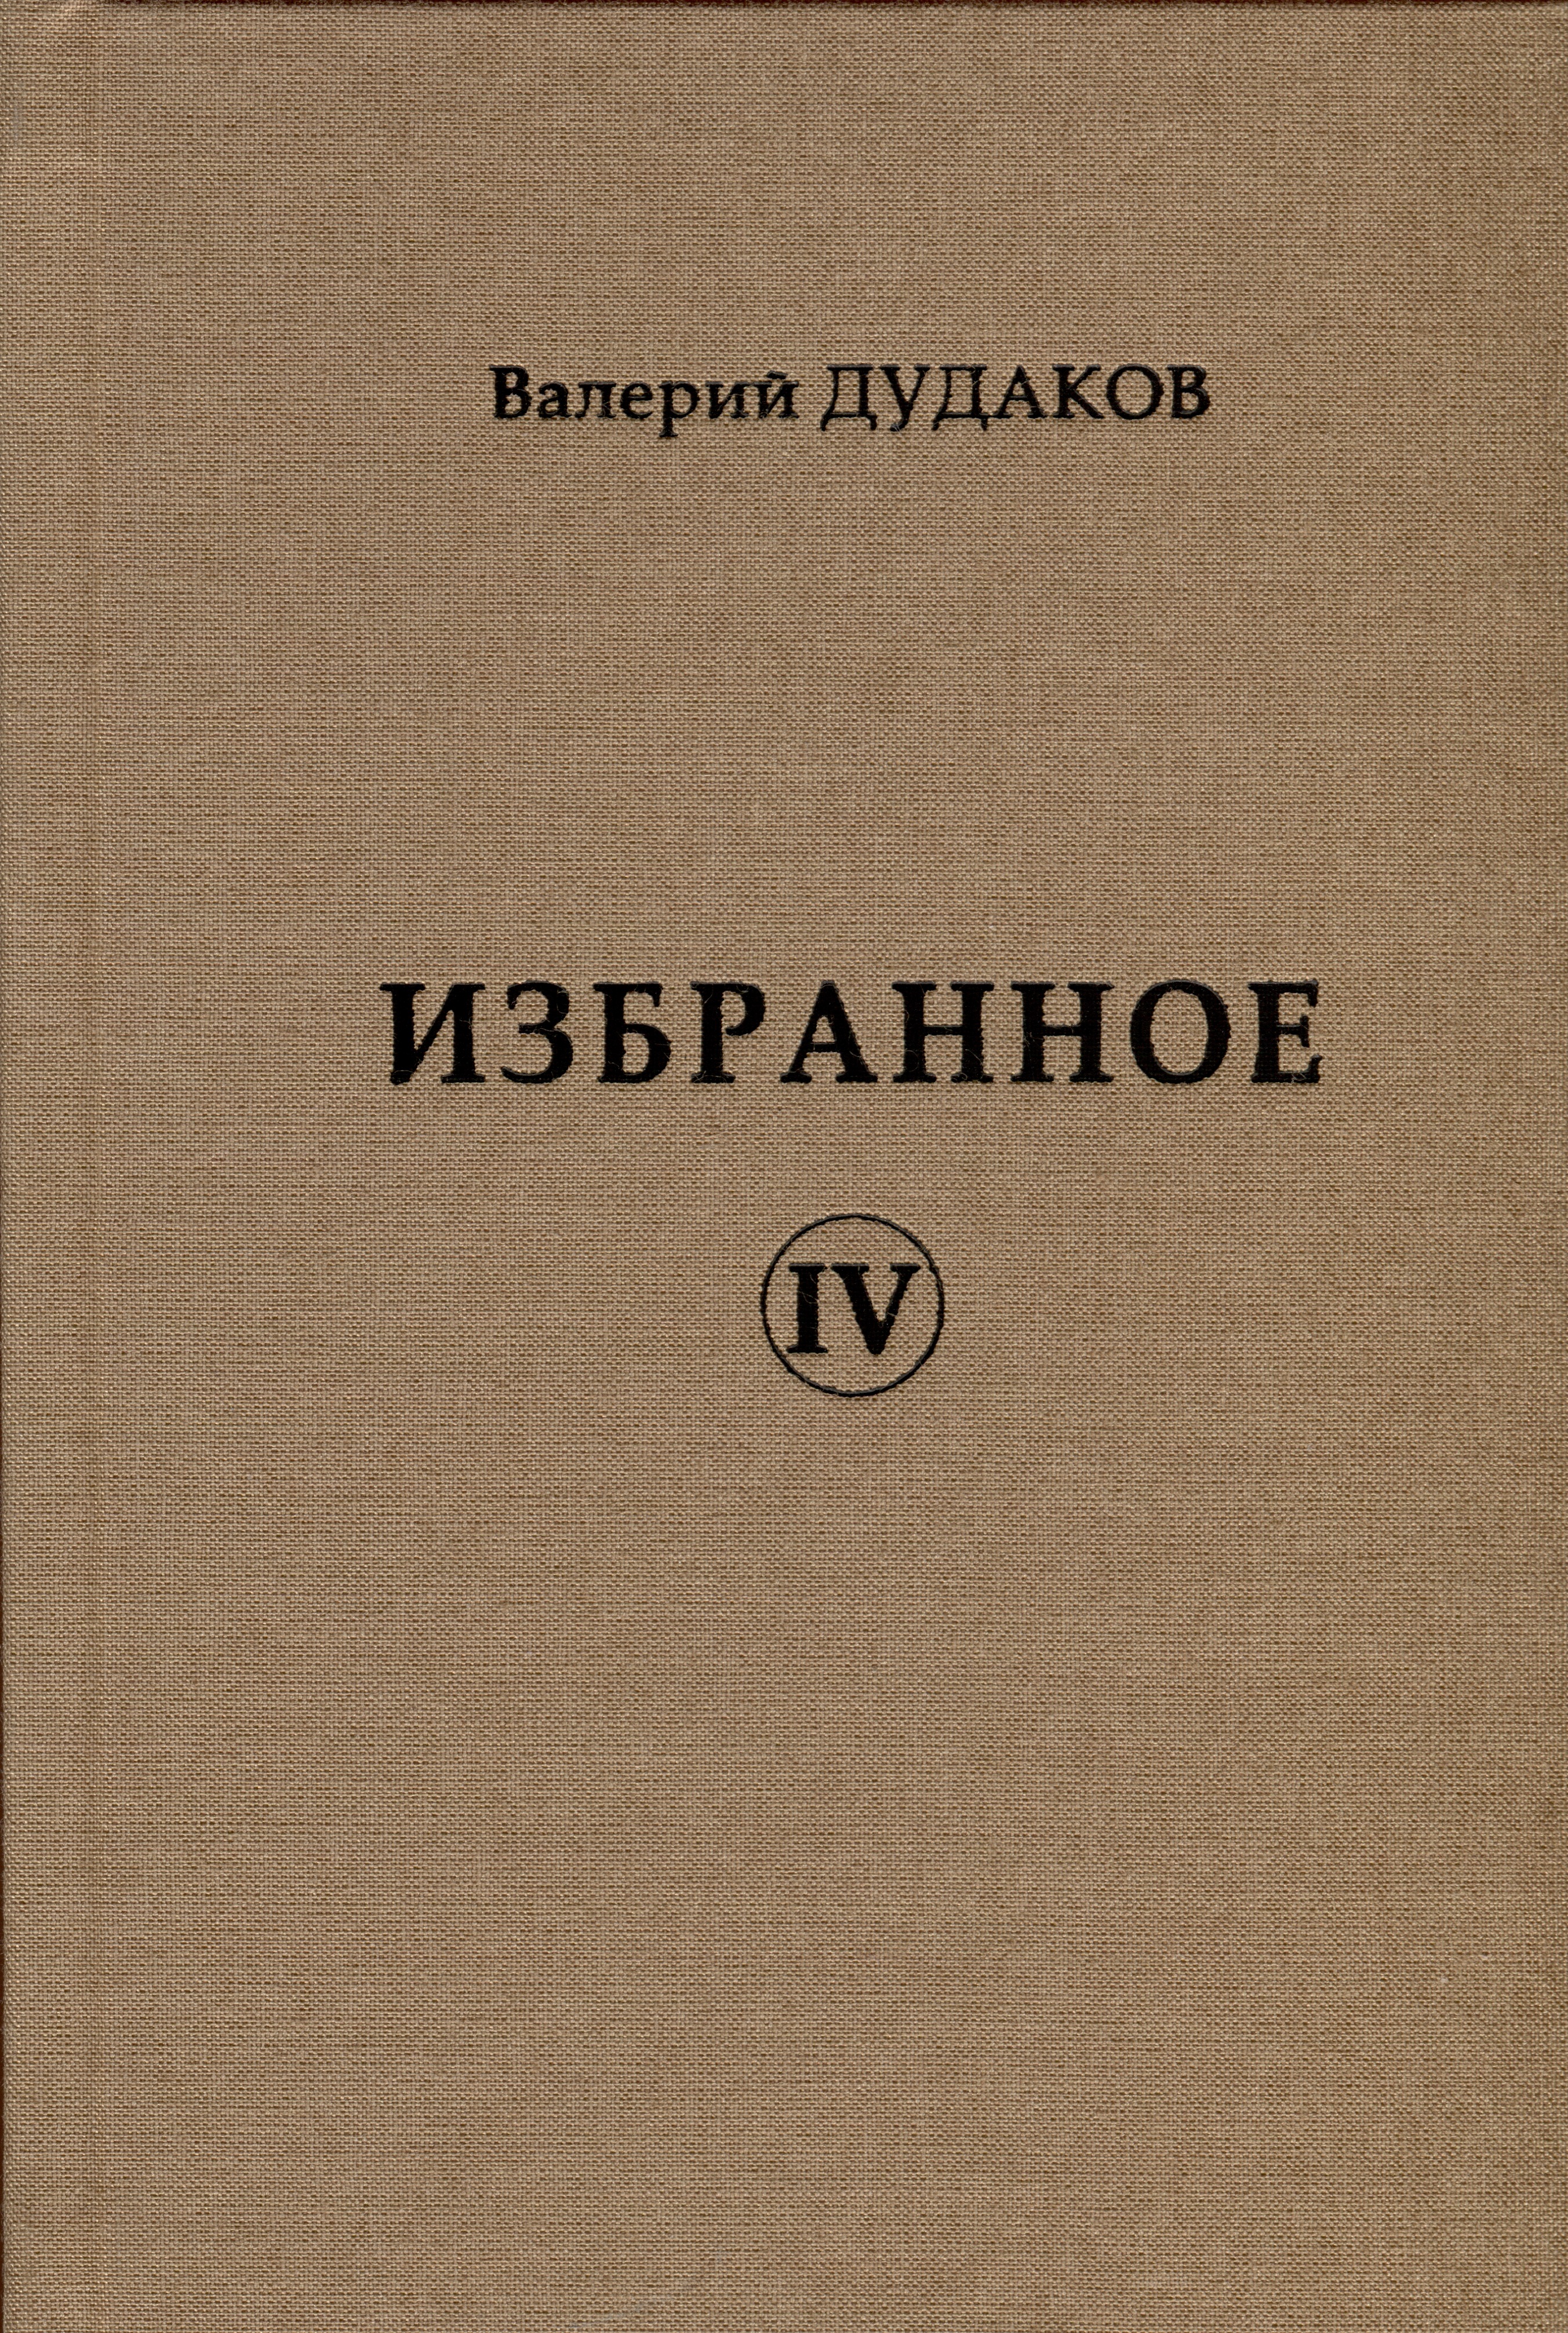 Дудаков Валерий Александрович Избранное IV херберт з обновление взгляда избранные стихотворения